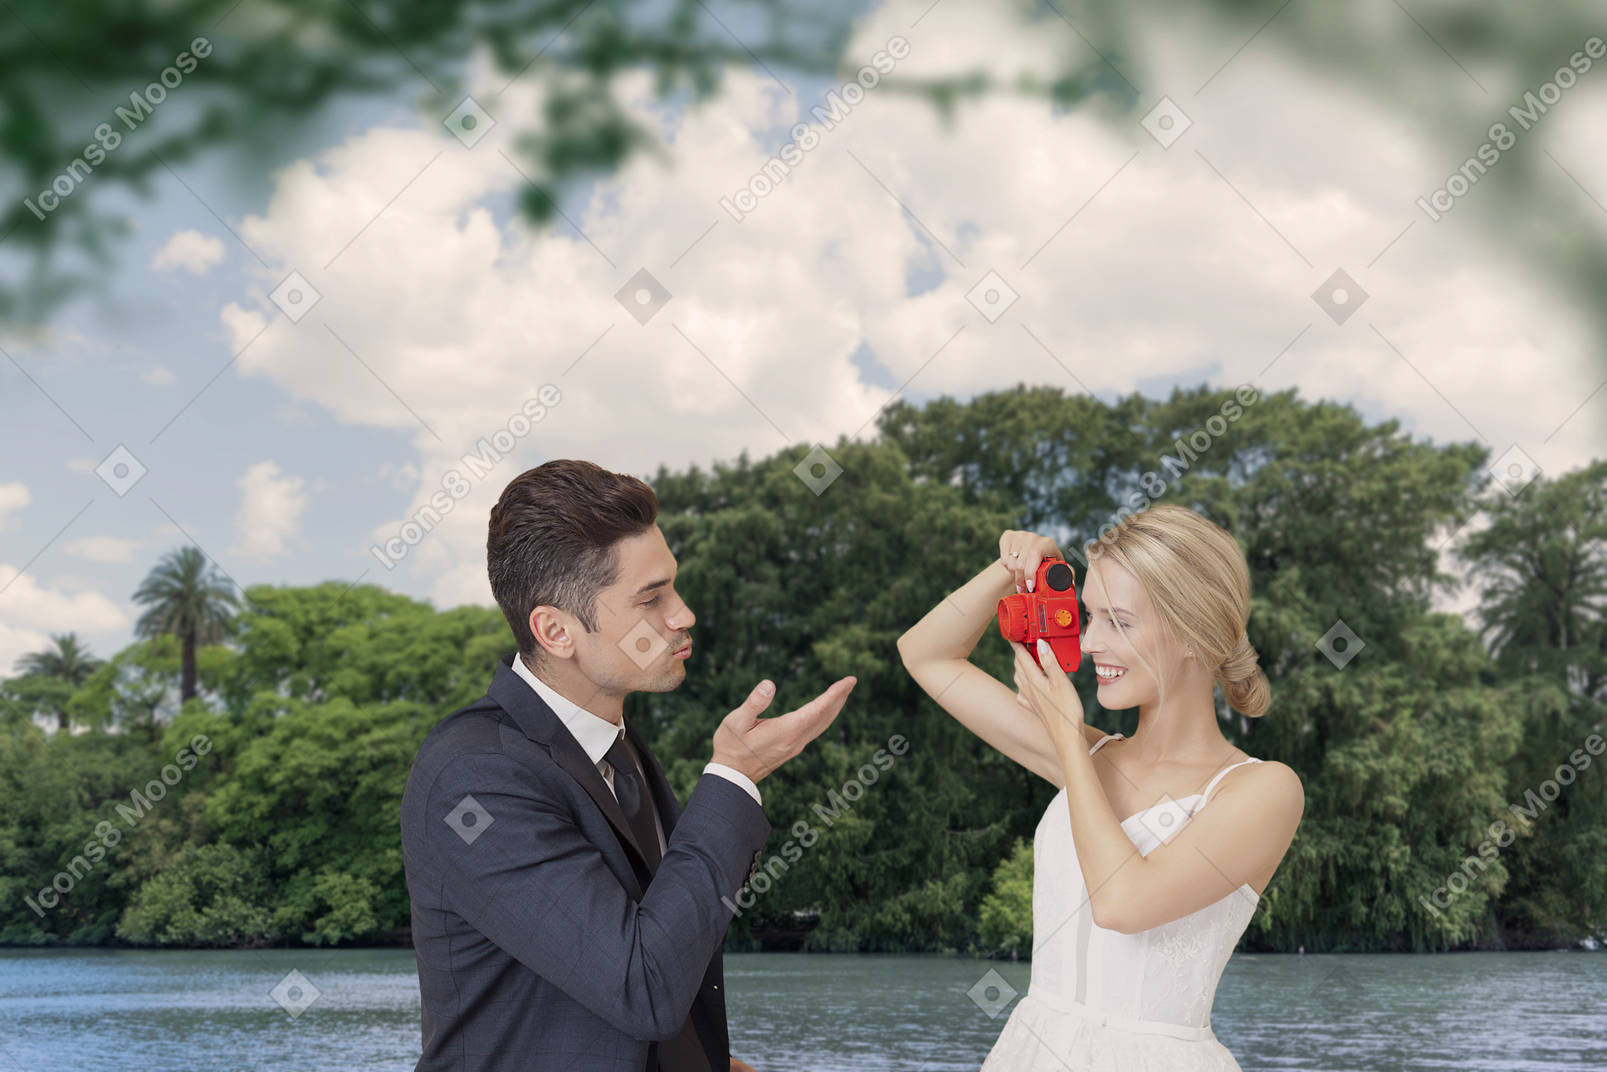 Una novia feliz tomando una foto de su novio dándole un beso bajo los árboles verdes cerca del río